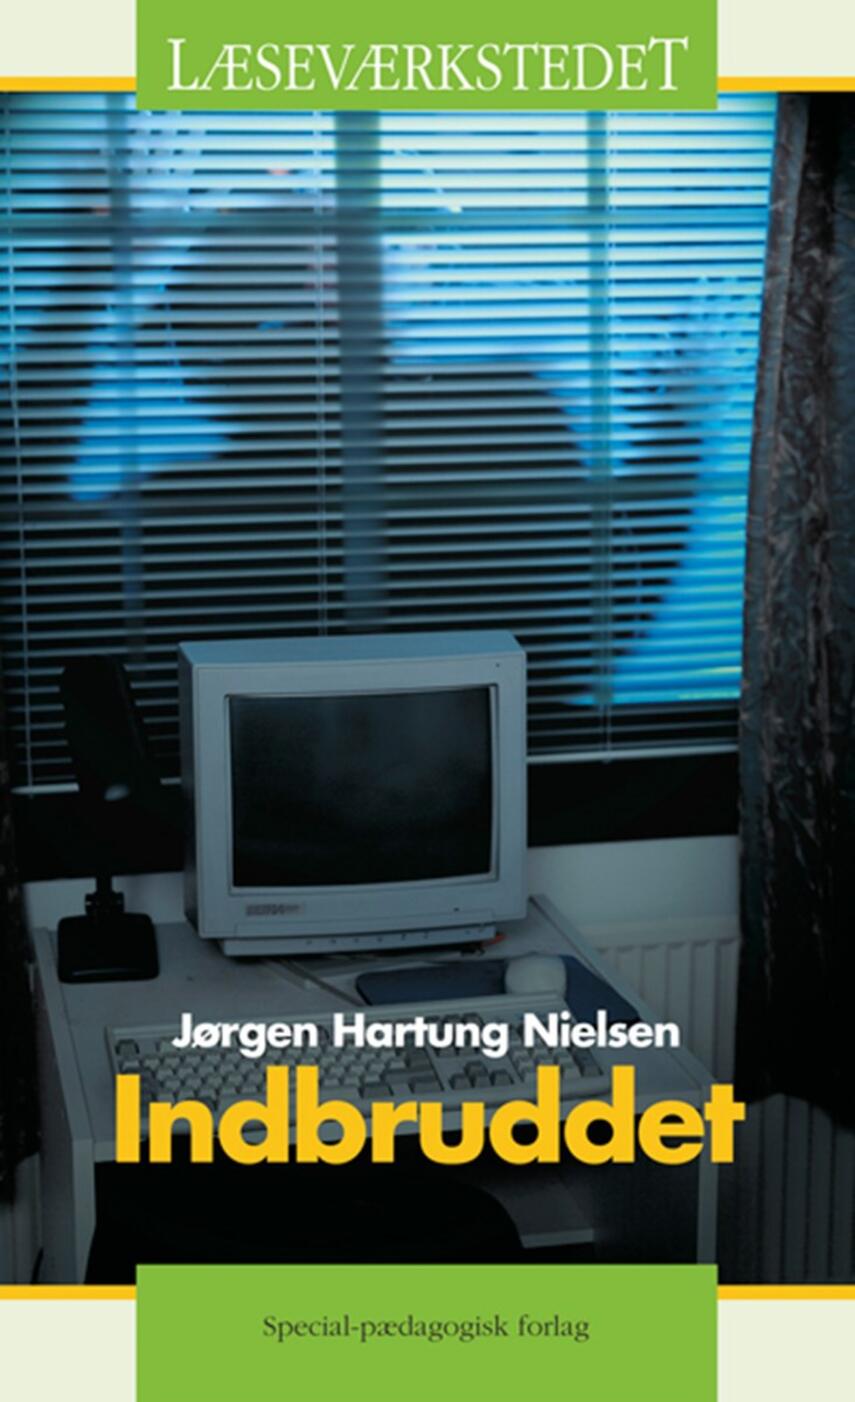 Jørgen Hartung Nielsen: Indbruddet